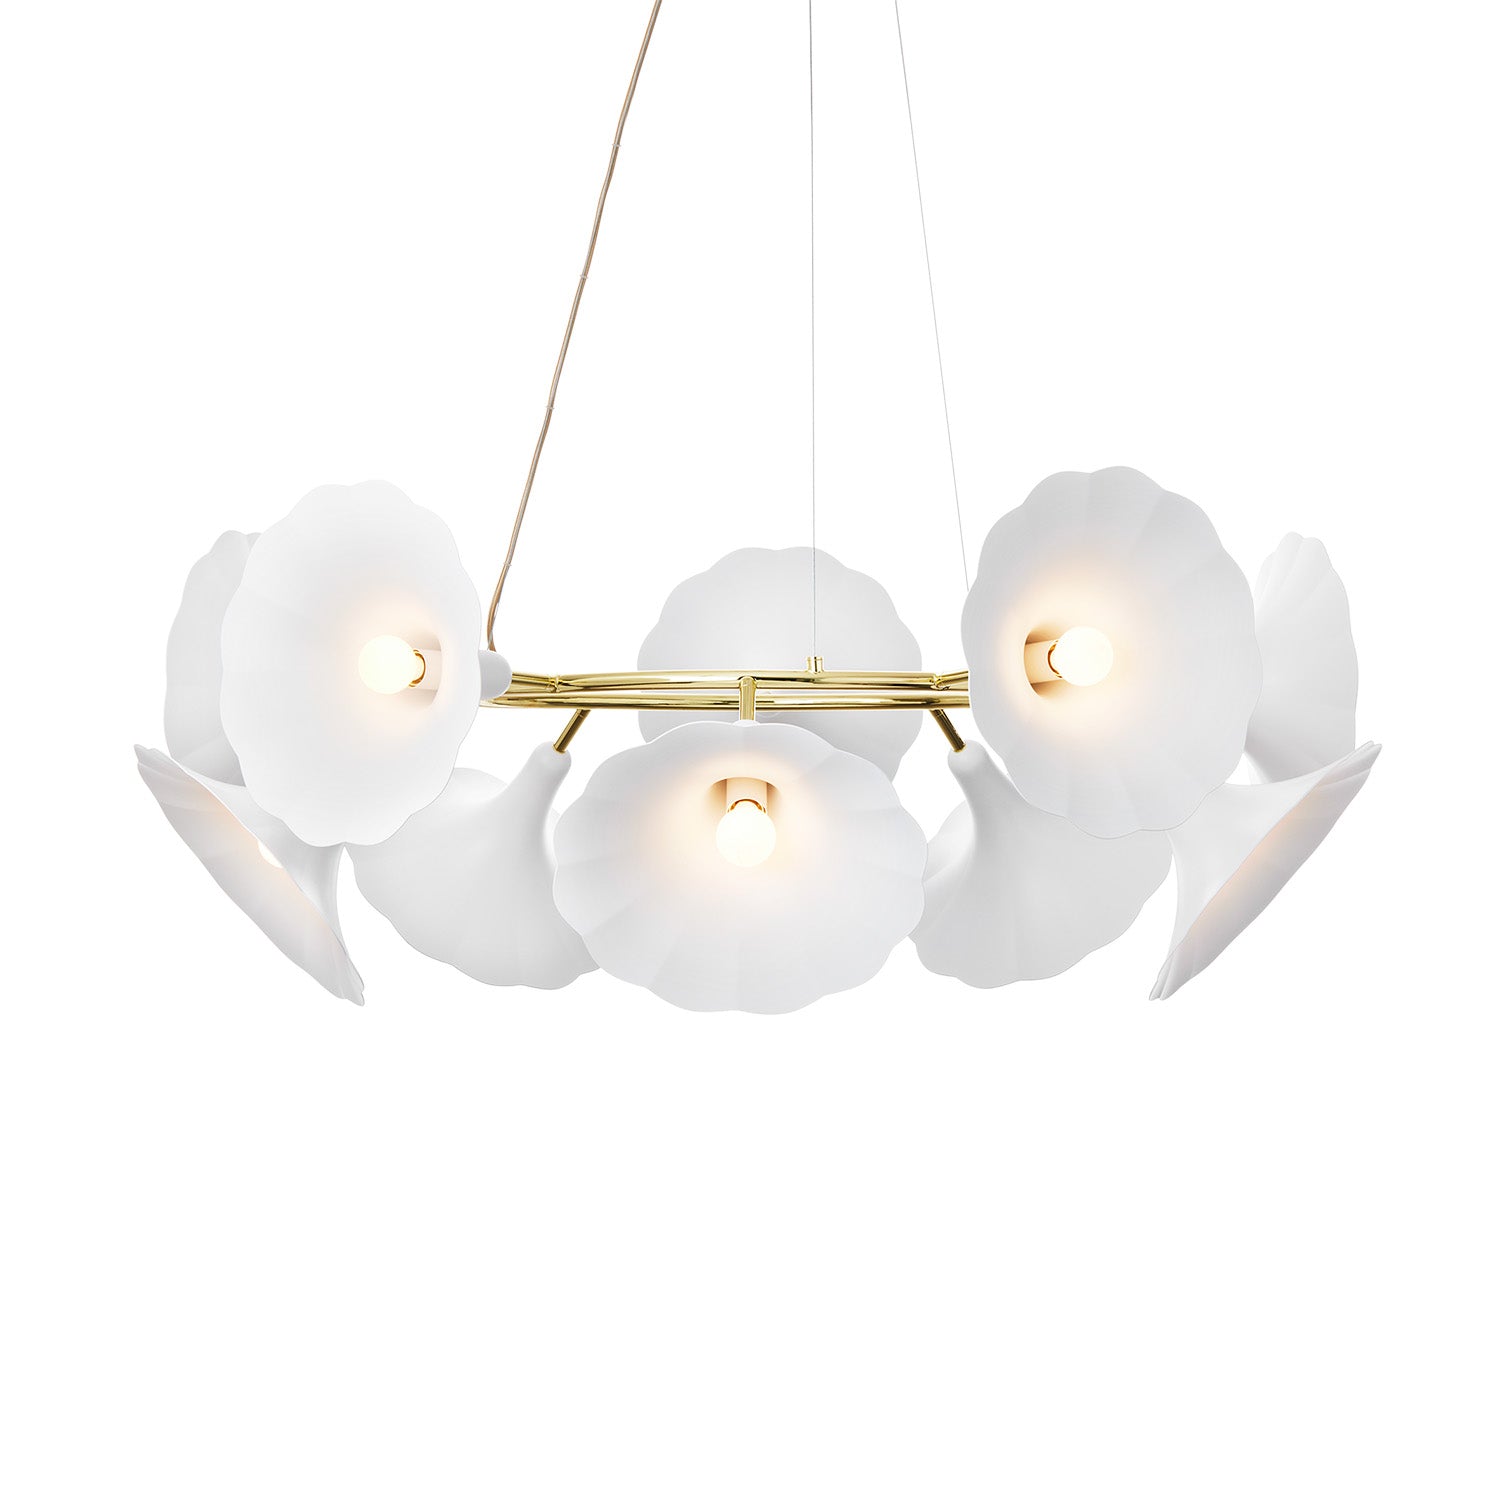 PETALII 10 - Large elegant chandelier in white flower and polished gold